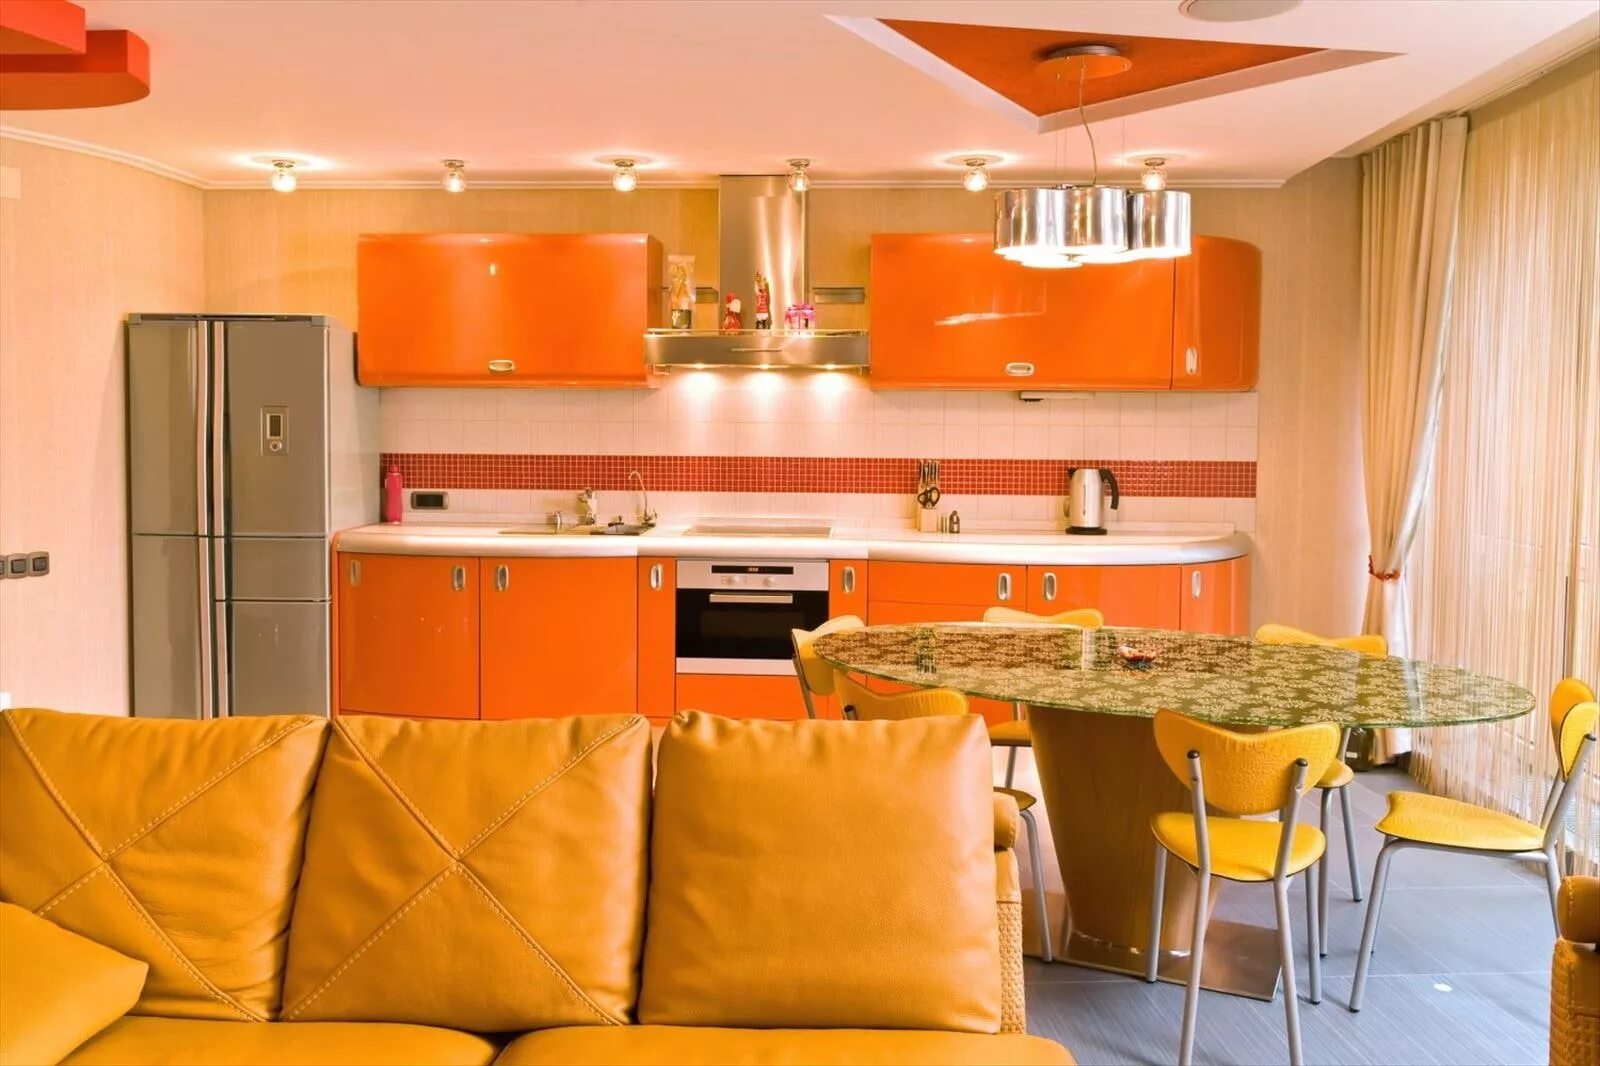 Какие цвета сочетаются на кухне. Кухни оранжевого цвета. Кухонный гарнитур оранжевого цвета. Оранжевая кухня в интерьере. Оранжевые стены на кухне.